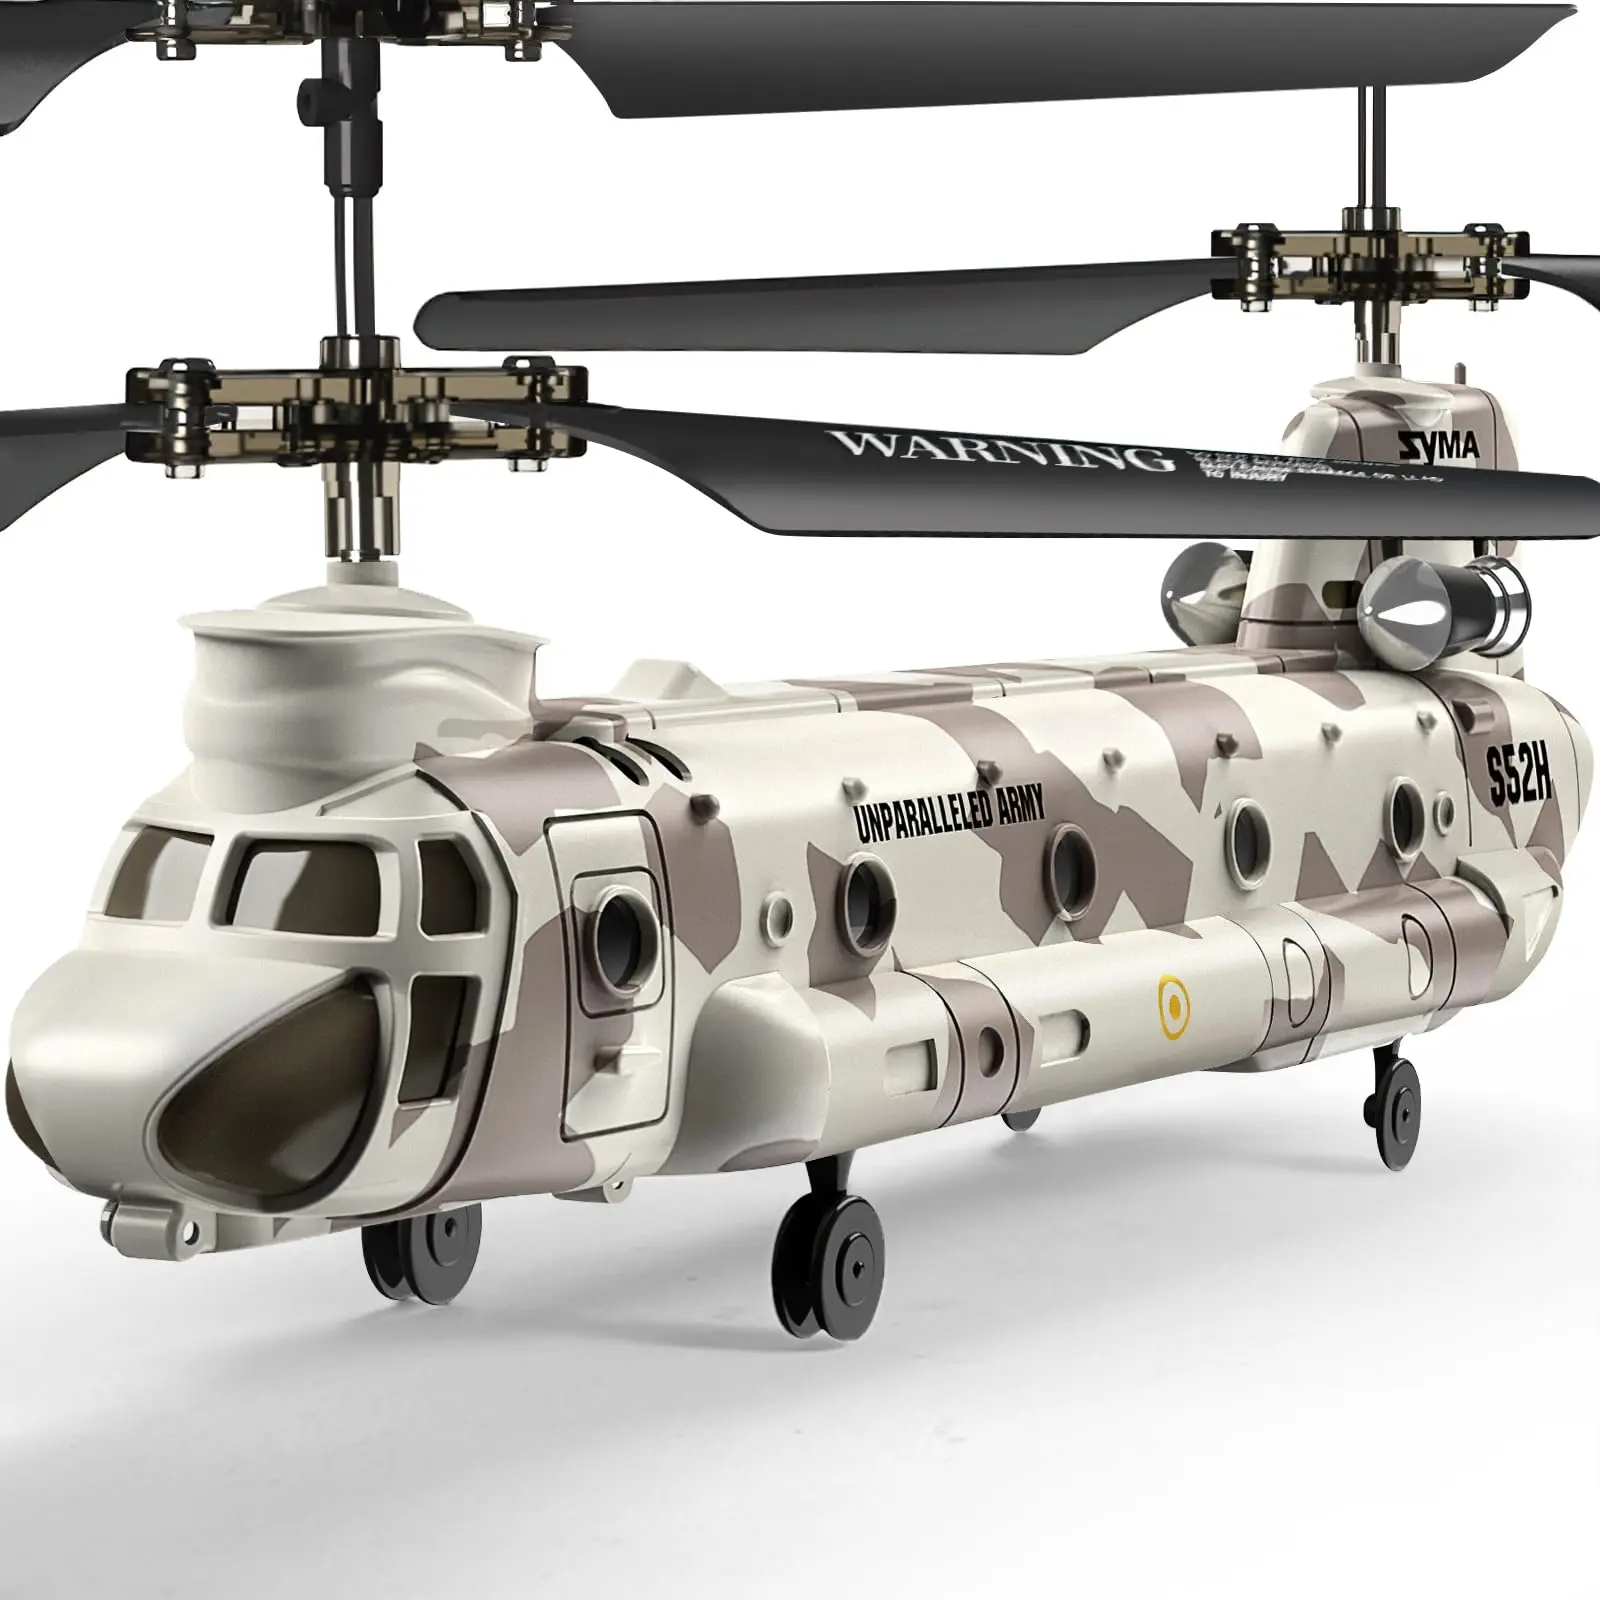 helicopteros militares con sistemas de control inteligentes - Cuánto puede cargar un helicóptero militar